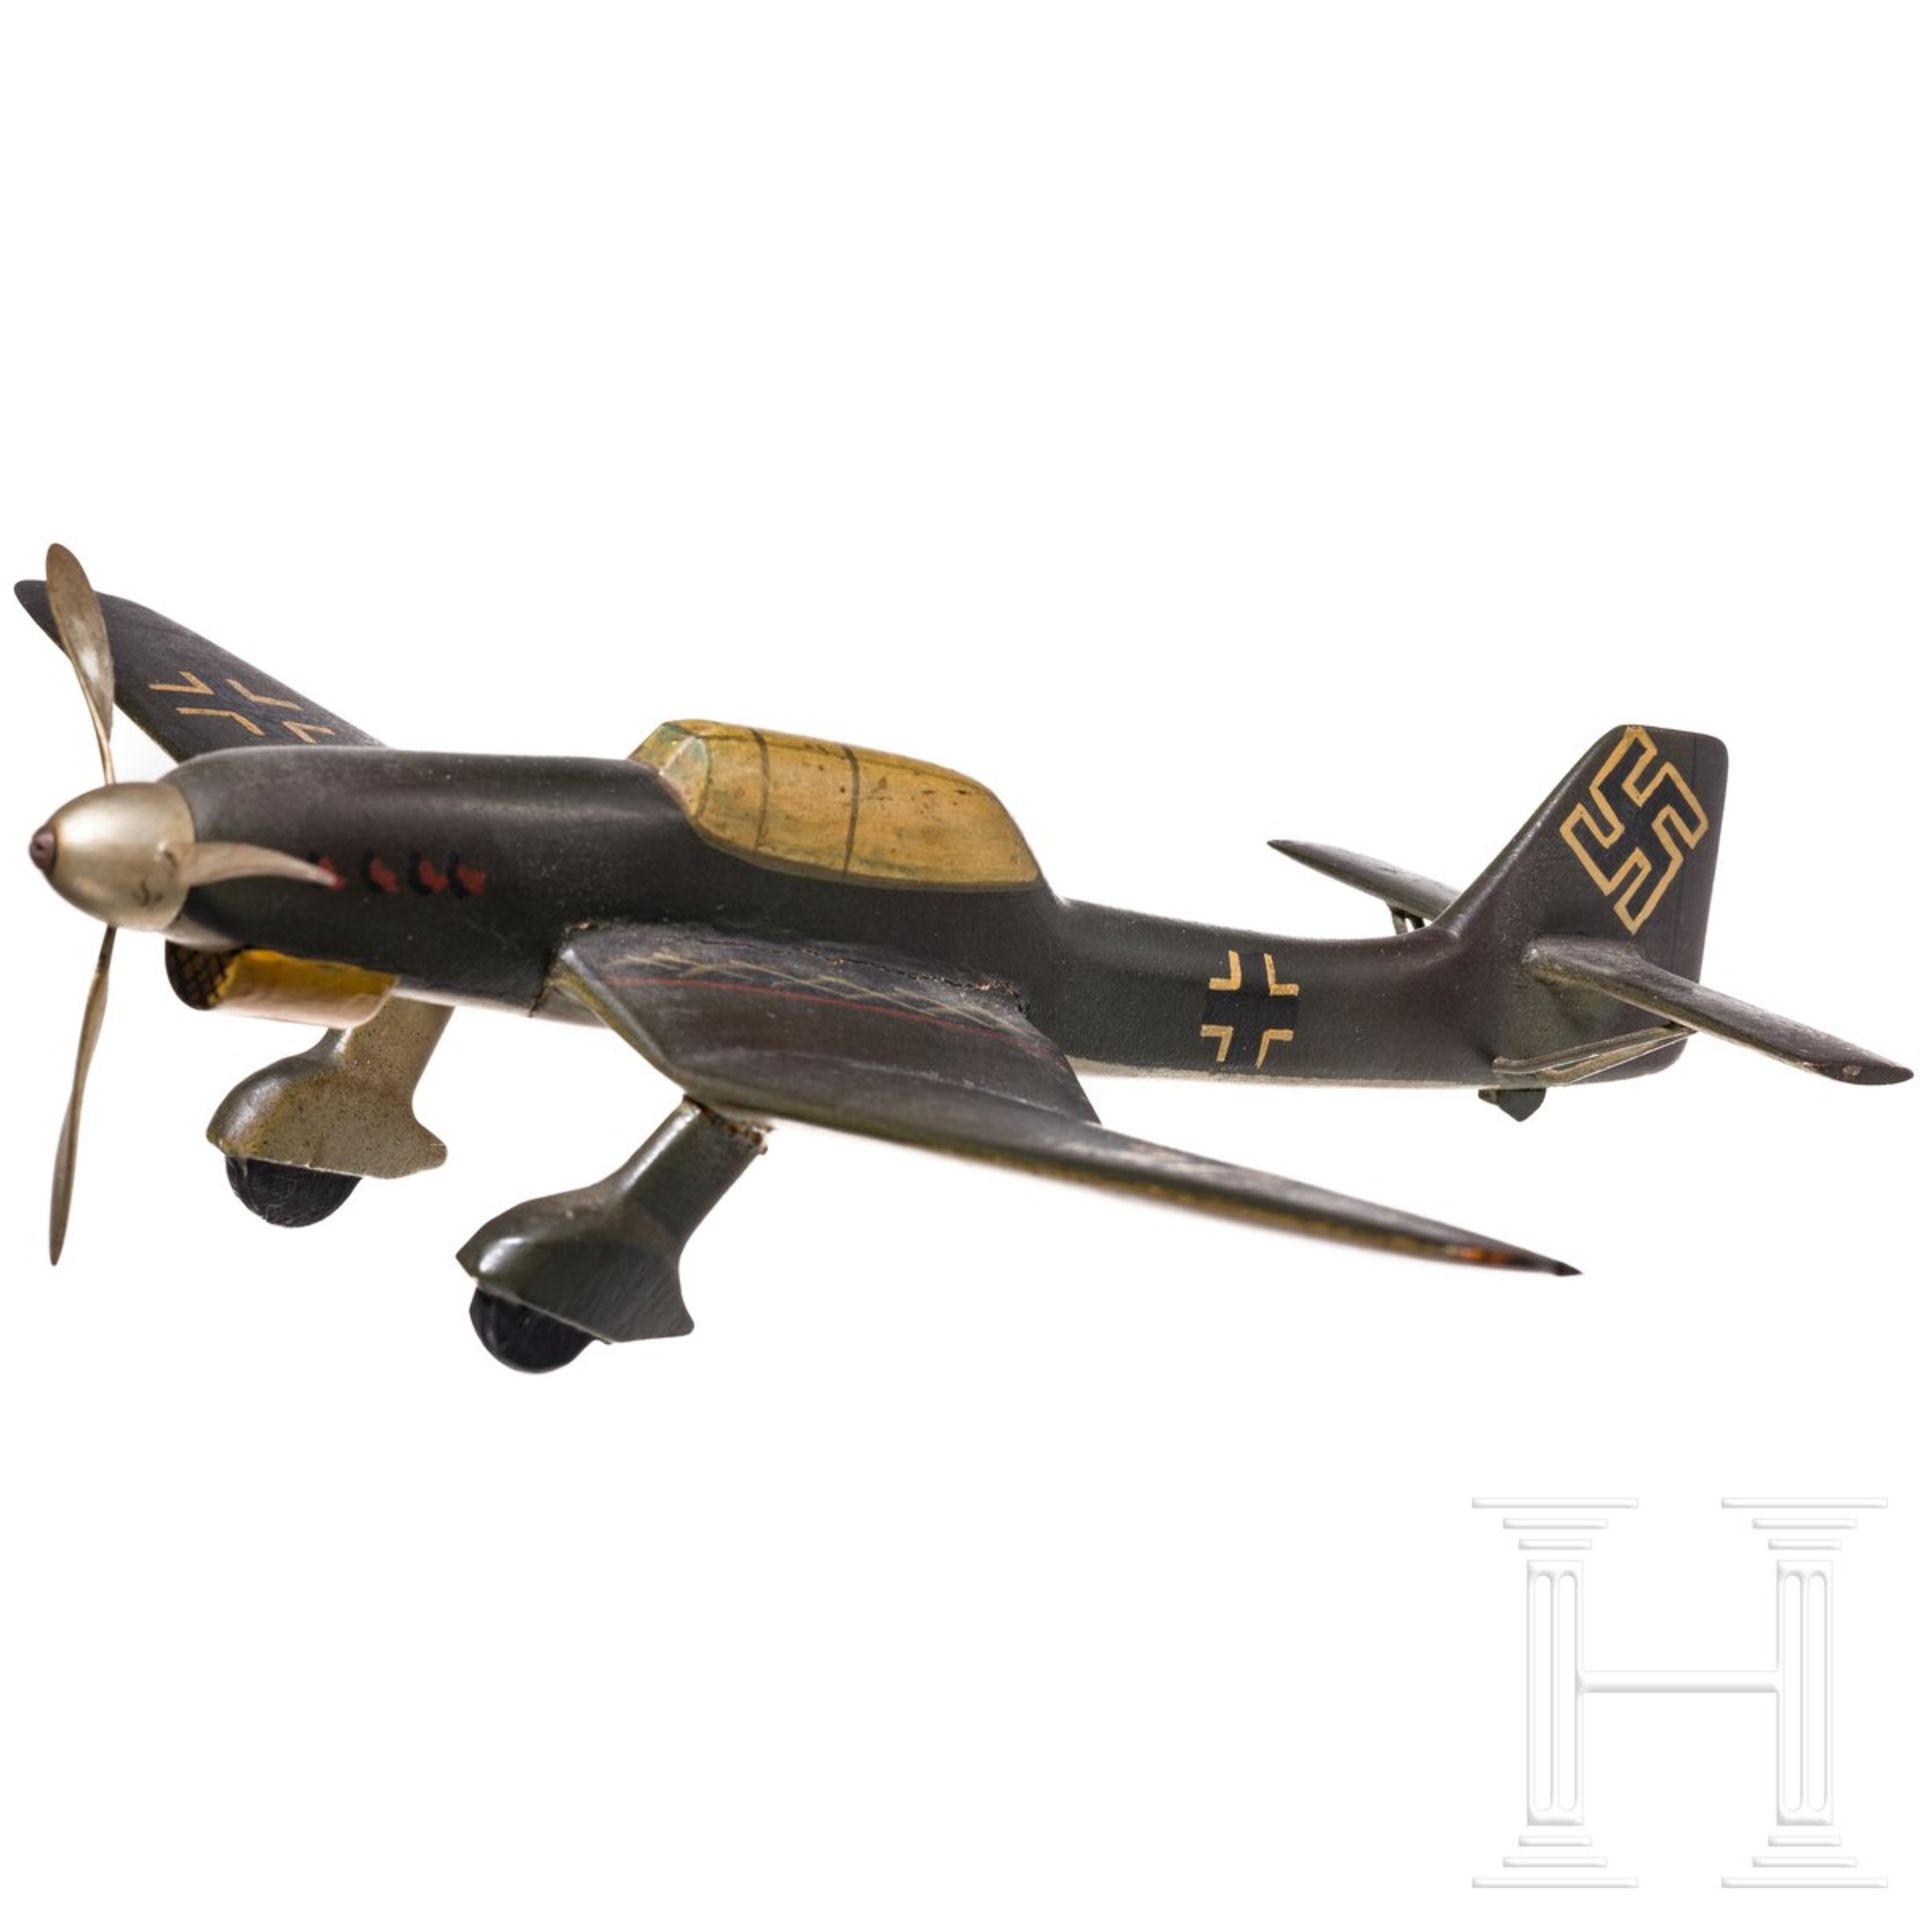 Lehrmodell einer Ju 87 "Stuka" - Bild 2 aus 5